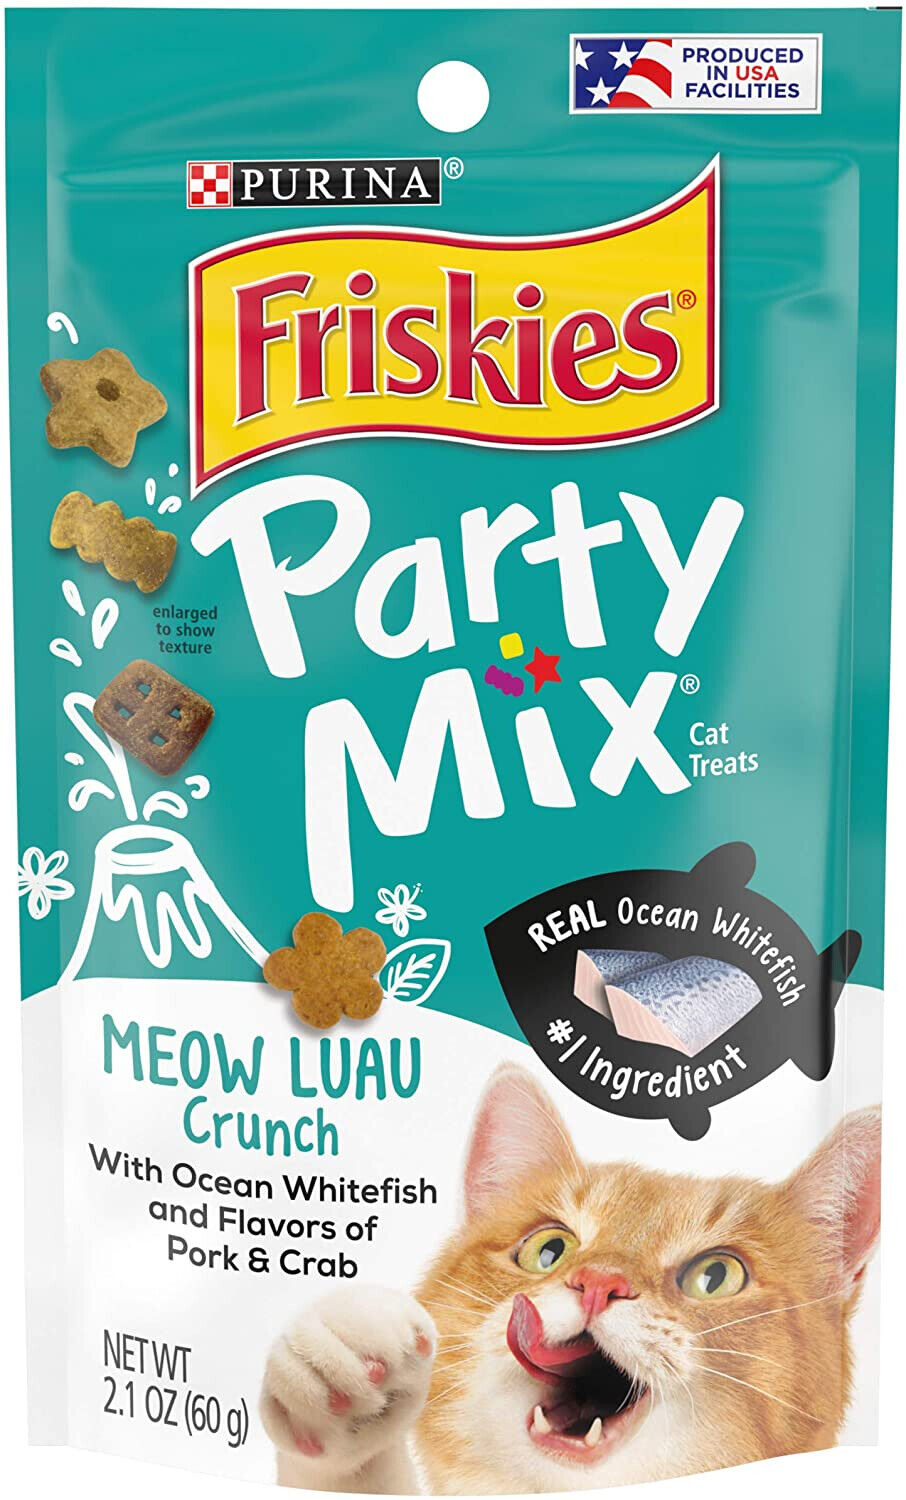 Friskies Party Mix Crunch Treats Meow Luau